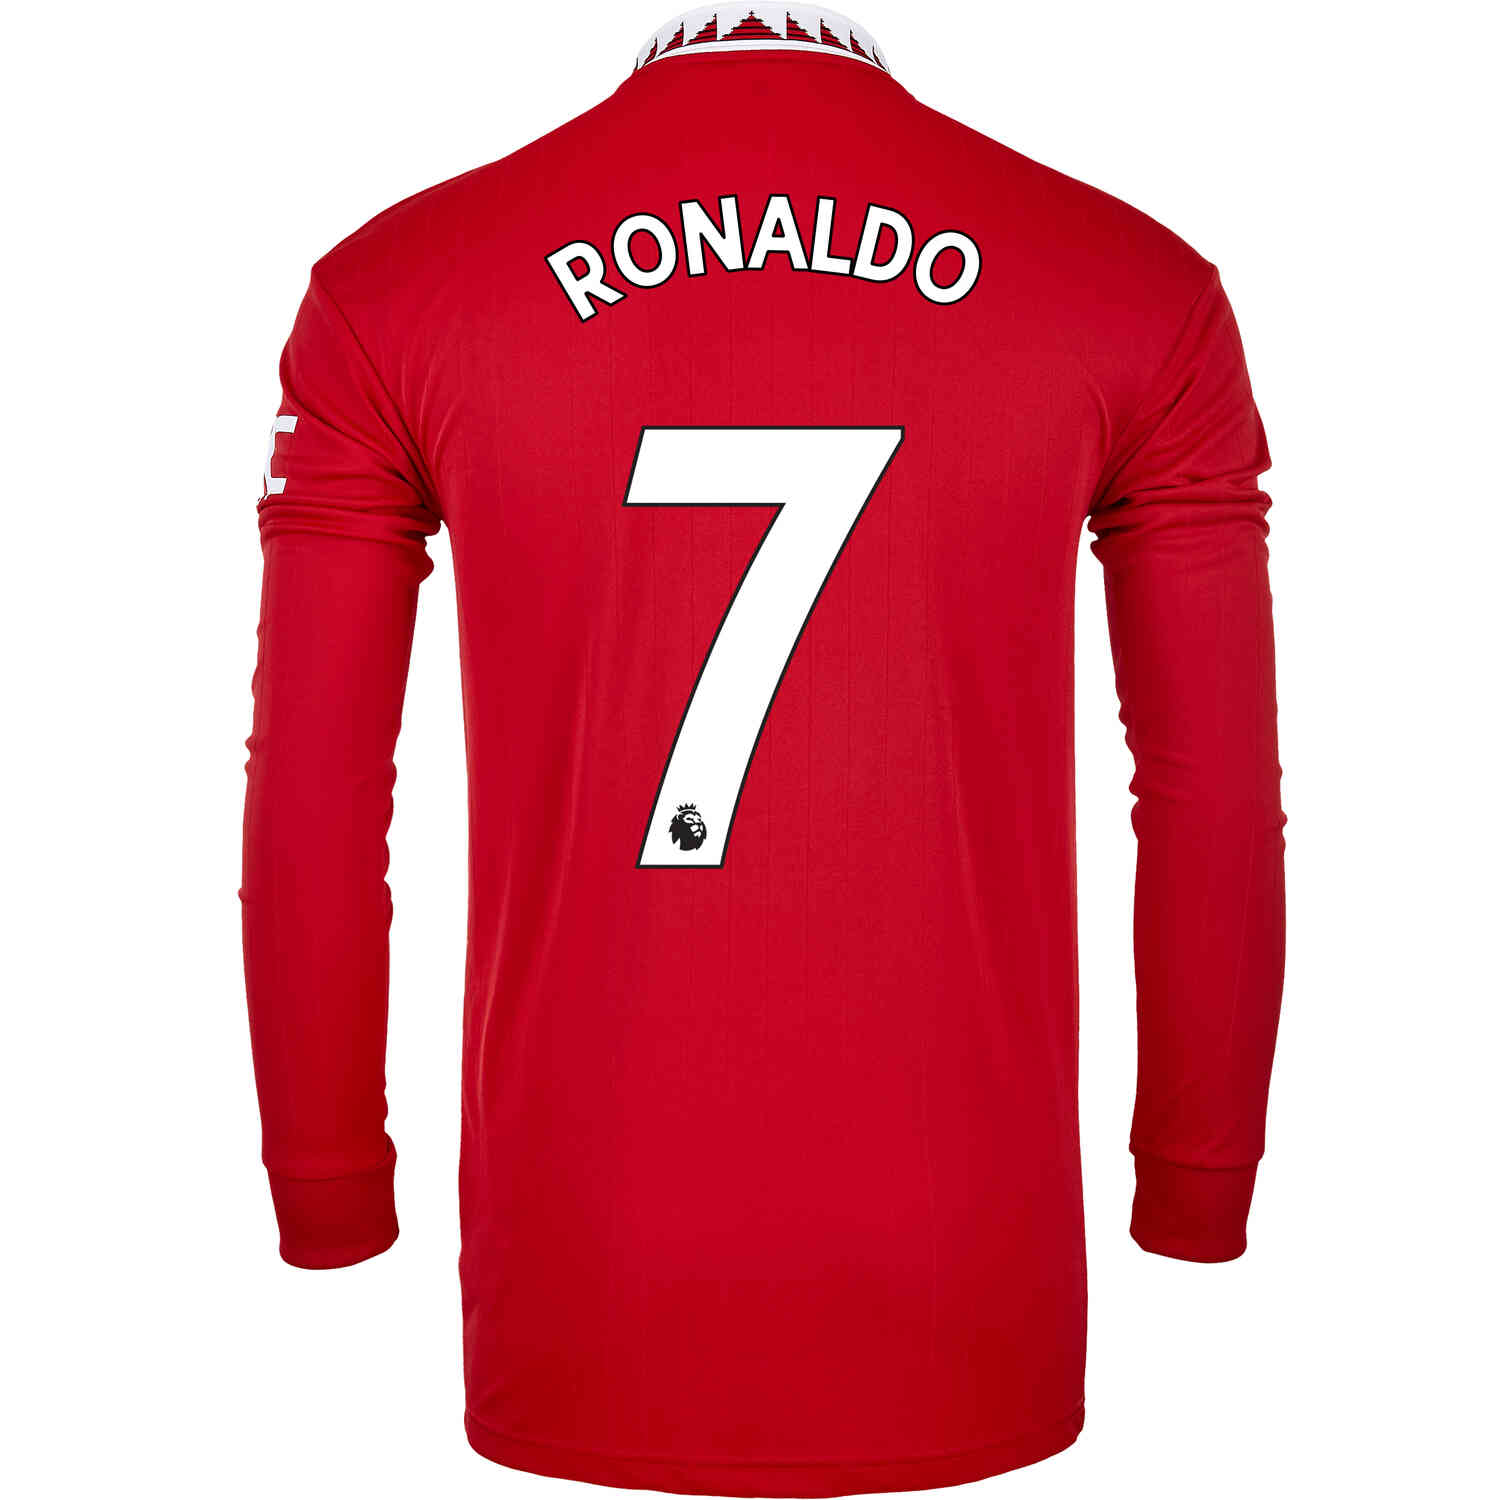 Ronaldo Man Utd New Kit | lupon.gov.ph